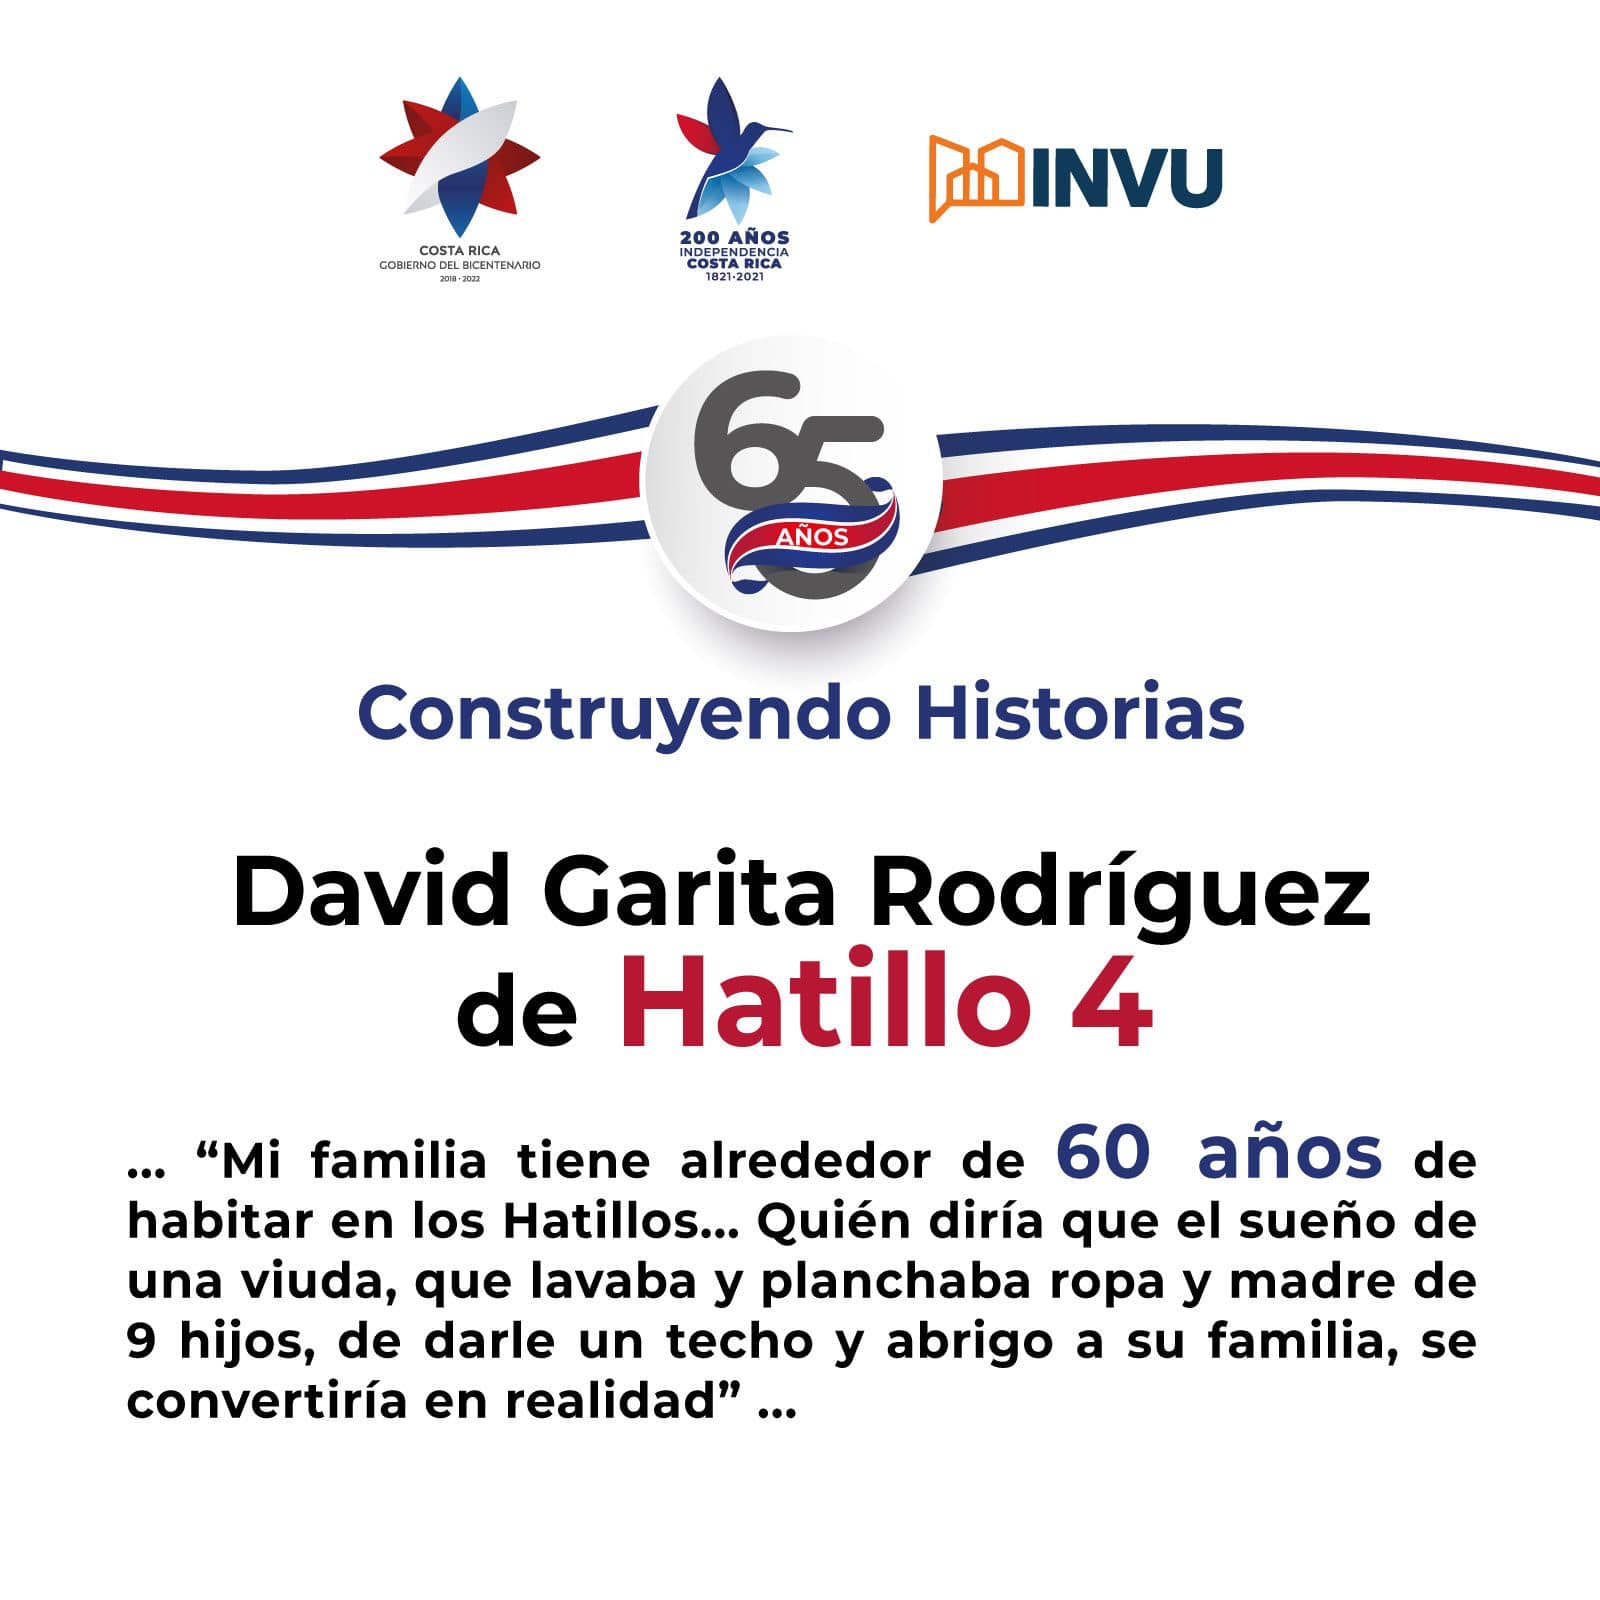 Hoy, sus pobladores recuerdan su vida en dicho lugar, según lo muestra el comentario de David Garita Rodríguez de Hatillo 4.